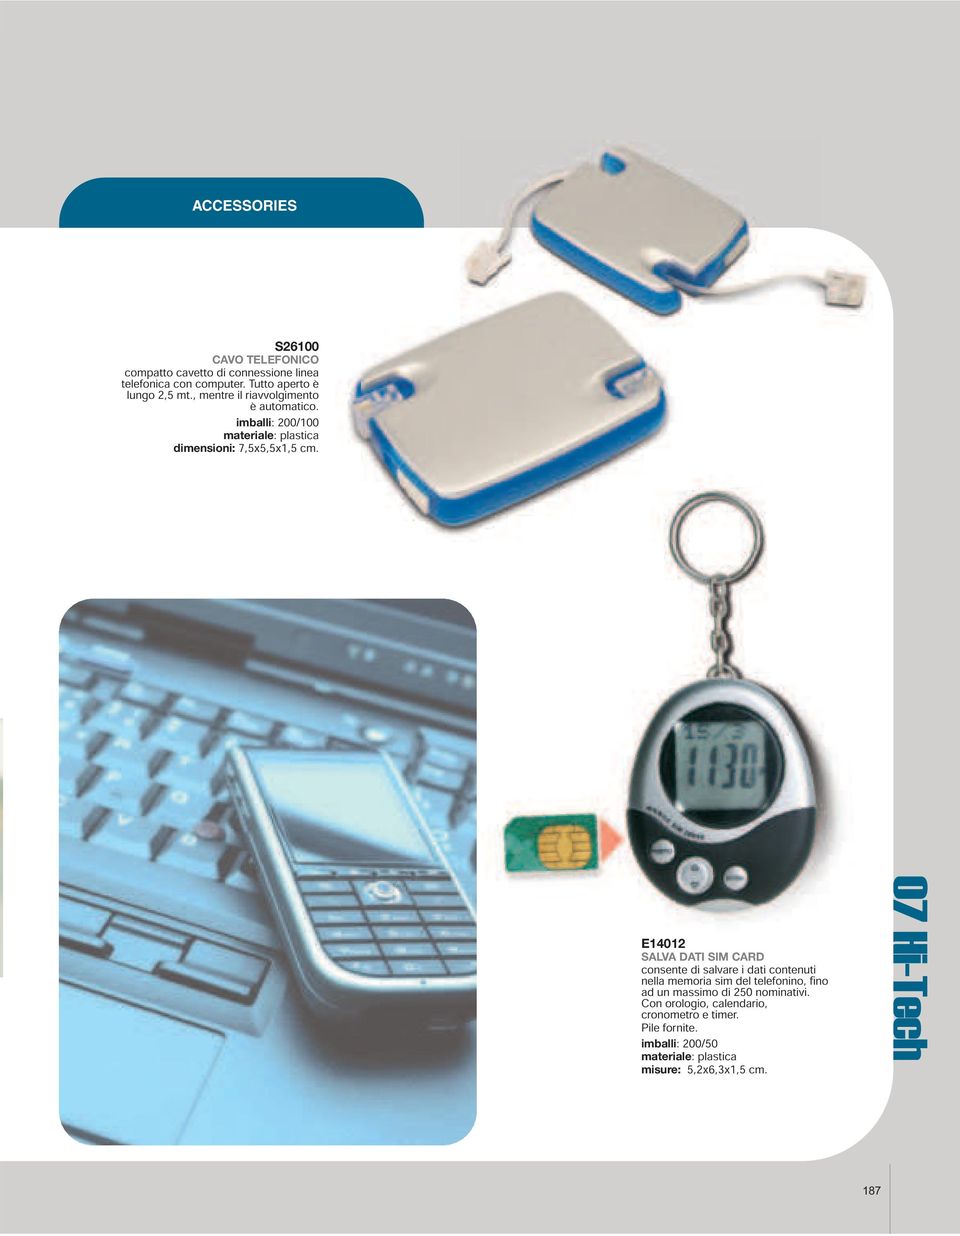 E14012 SALVA DATI SIM CARD consente di salvare i dati contenuti nella memoria sim del telefonino, fi no ad un